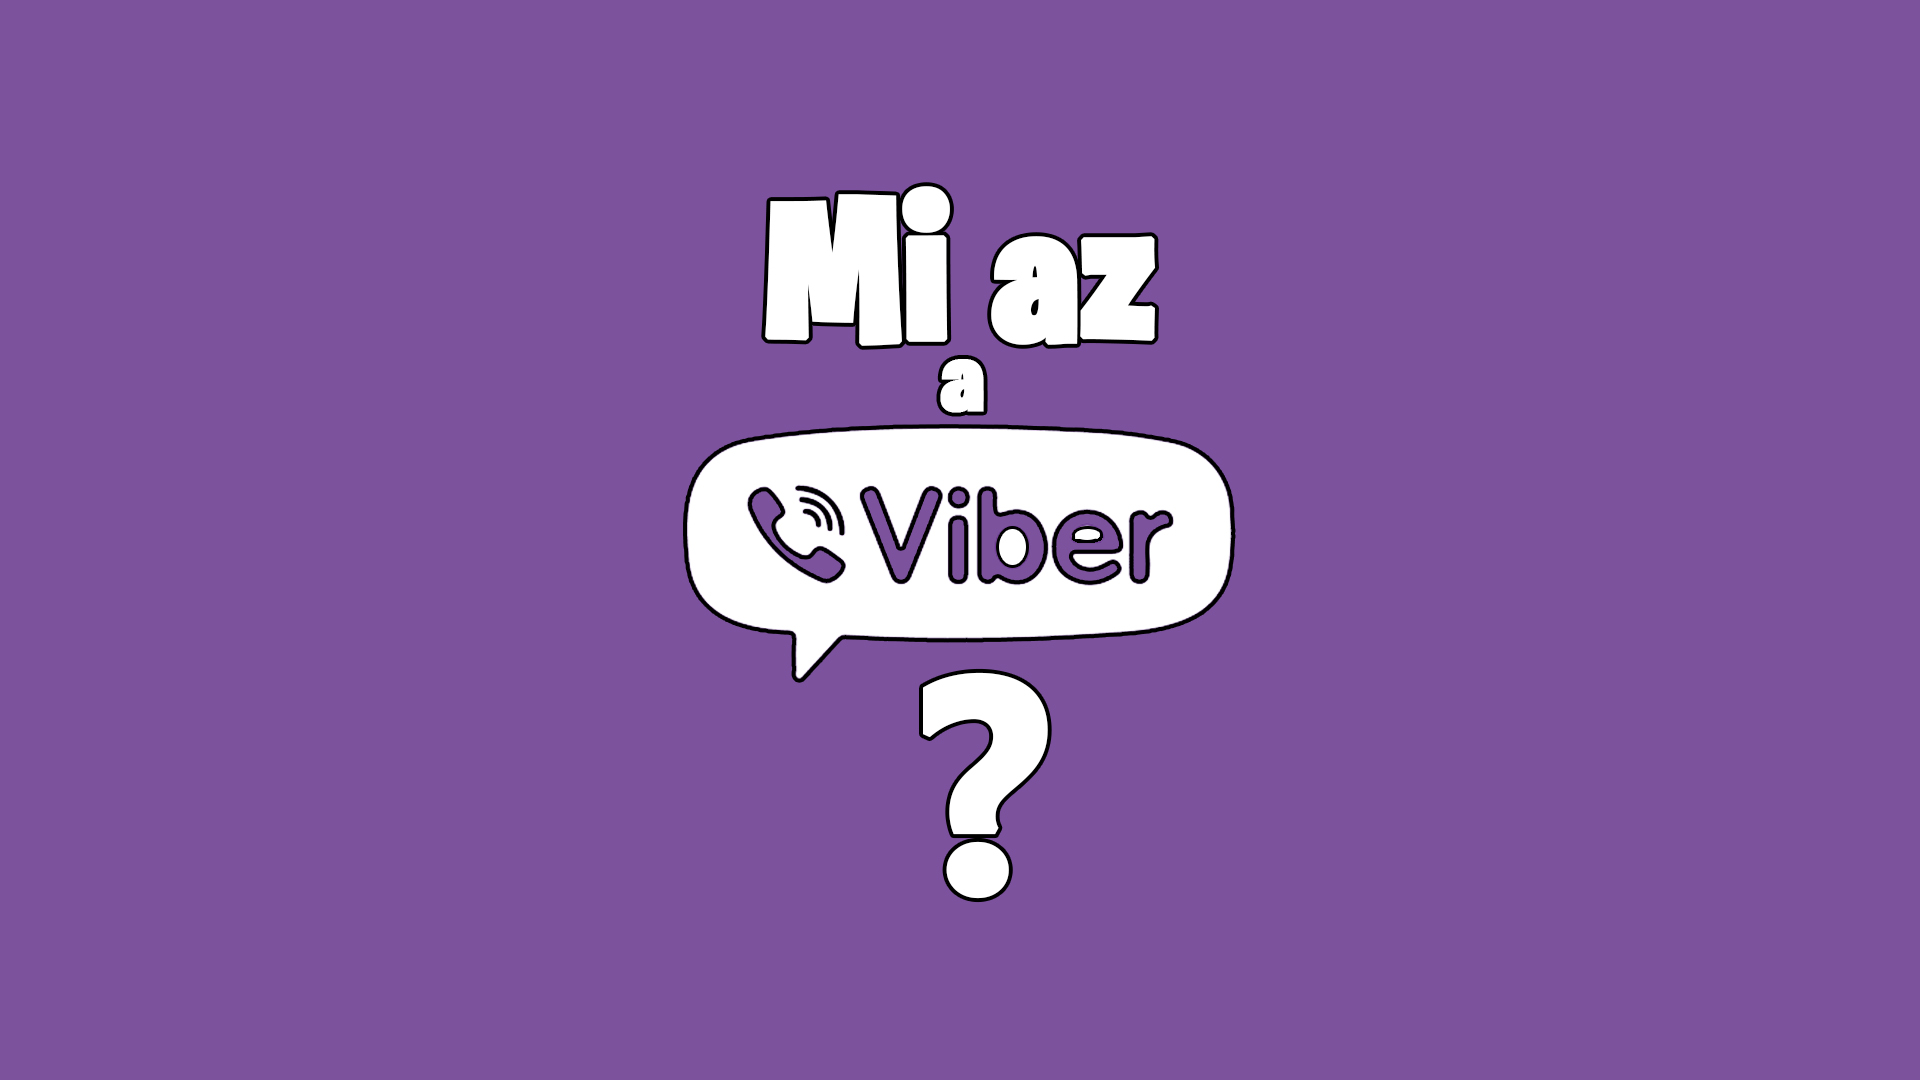 Mi az a Viber? És mire lehet használni? című cikk nyitóképe